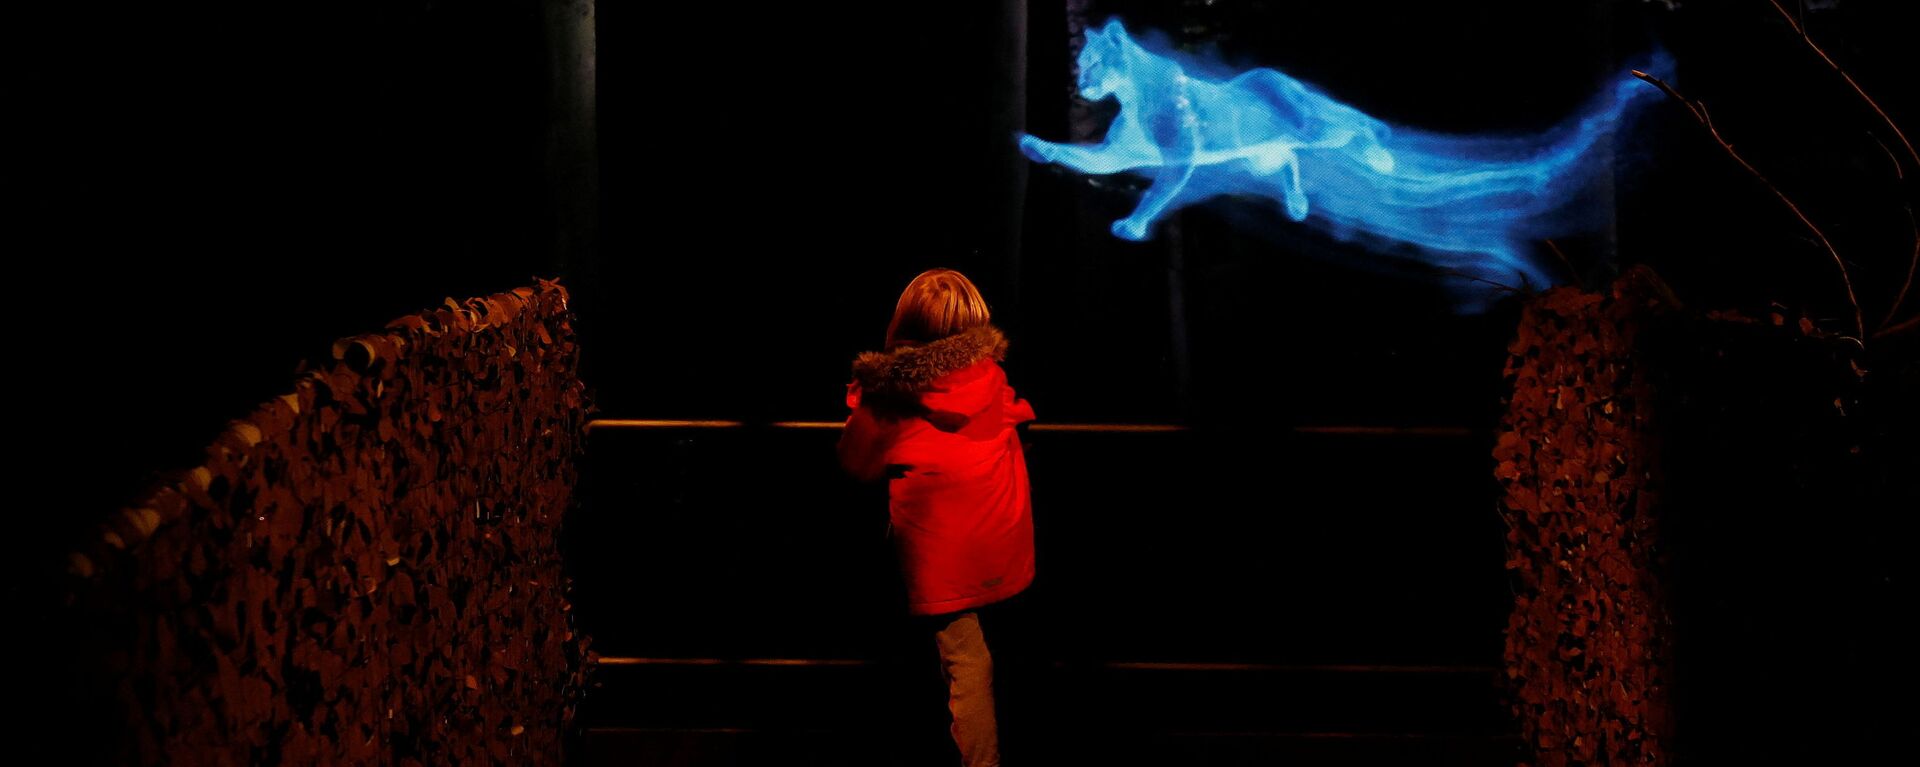 Ребенок в «Запретном лесу Гарри Поттера» в Арли-холле, Великобритания - Sputnik საქართველო, 1920, 21.10.2021